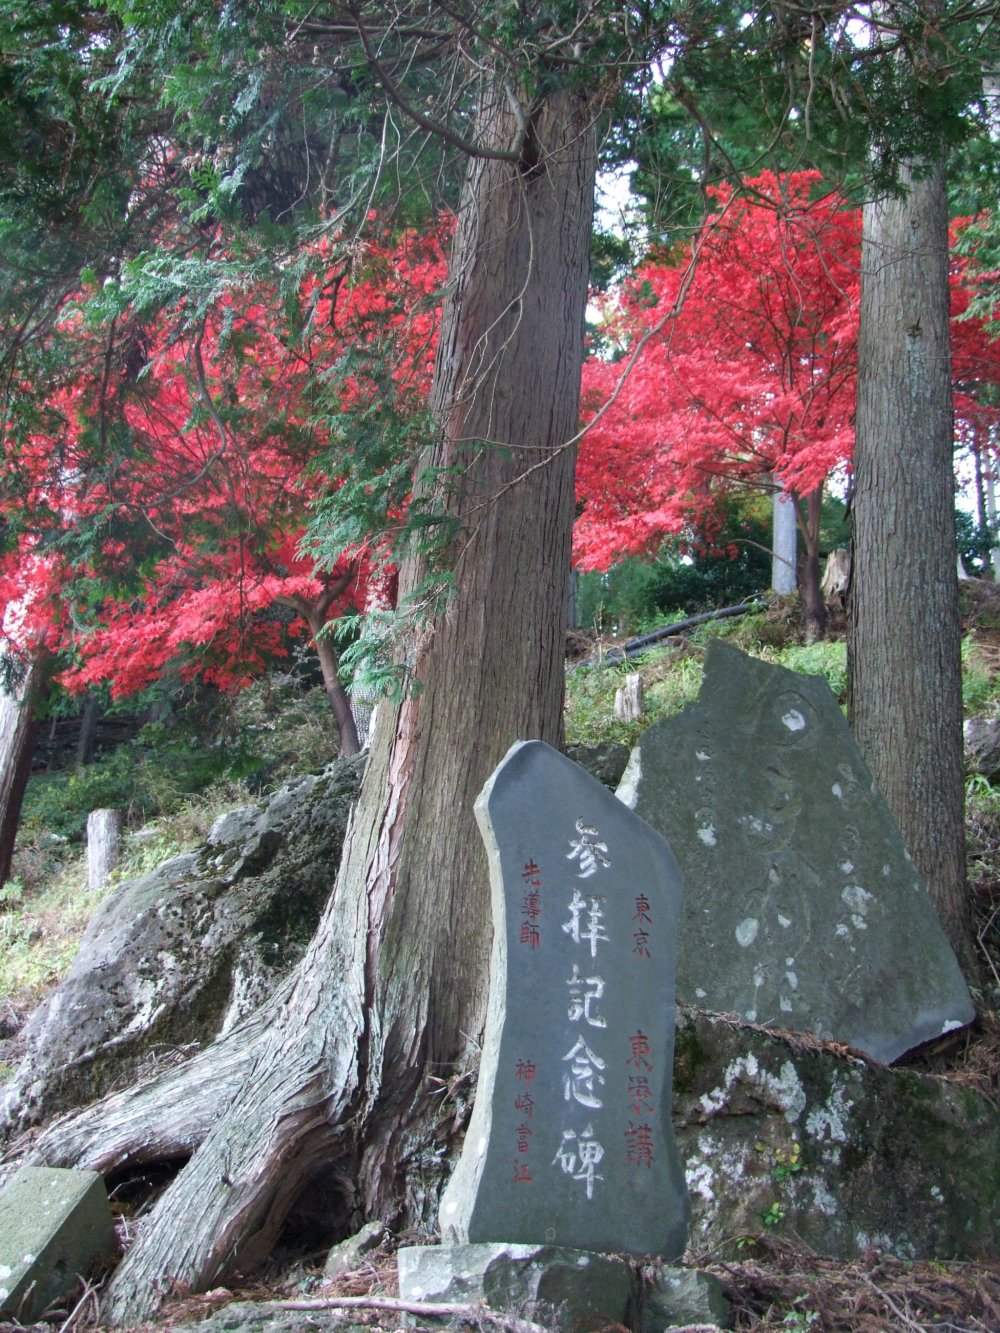 Ascending Oyama in November